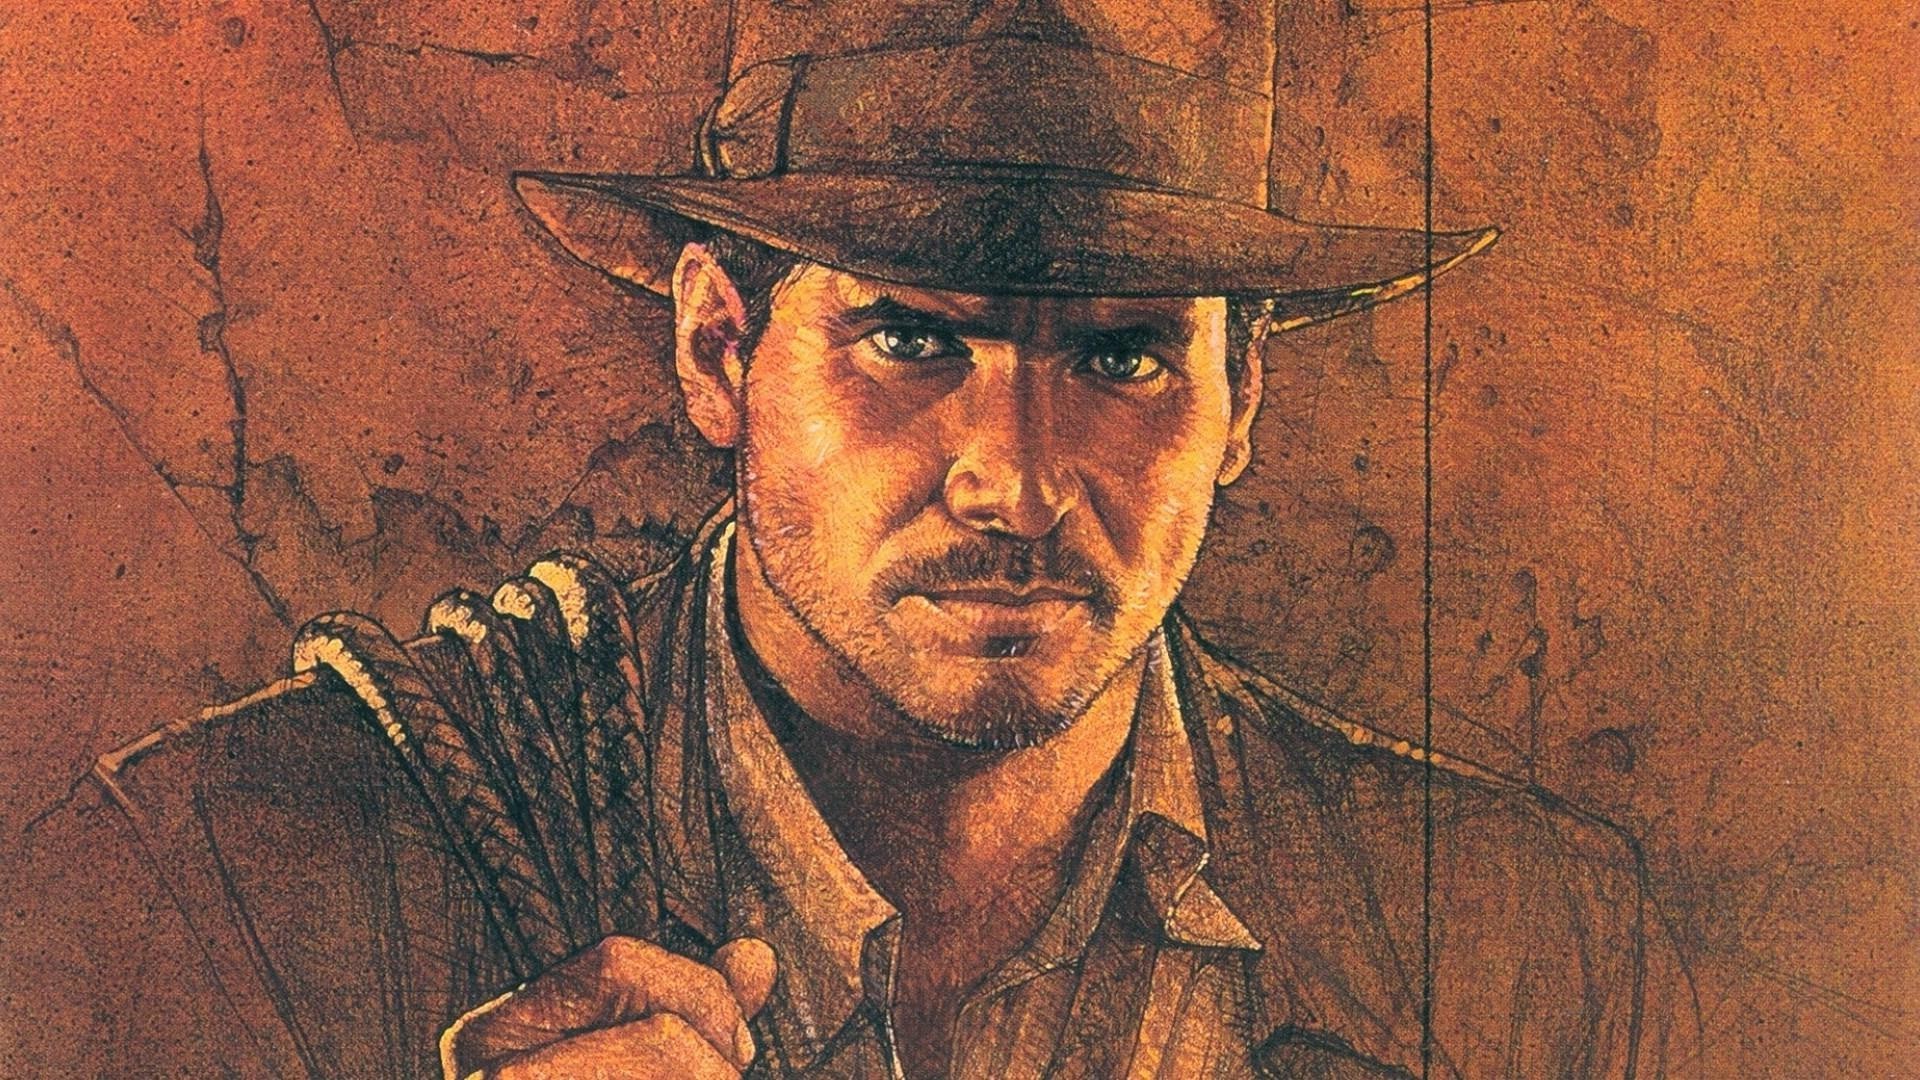 Indiana Jones wallpaper